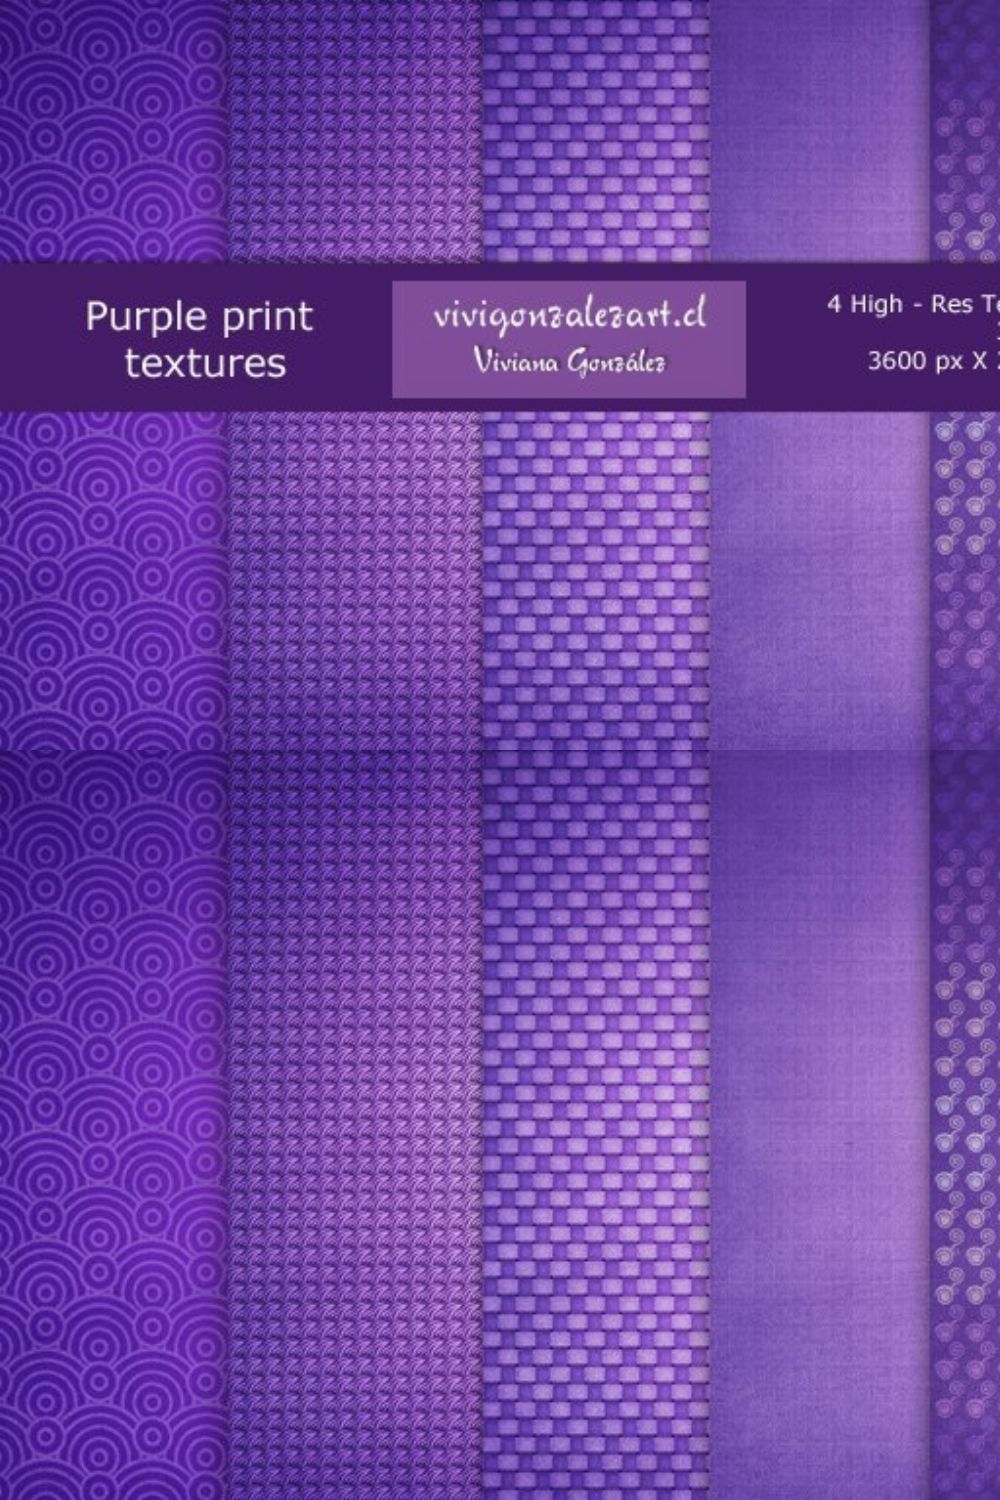 Purple print textures pinterest preview image.